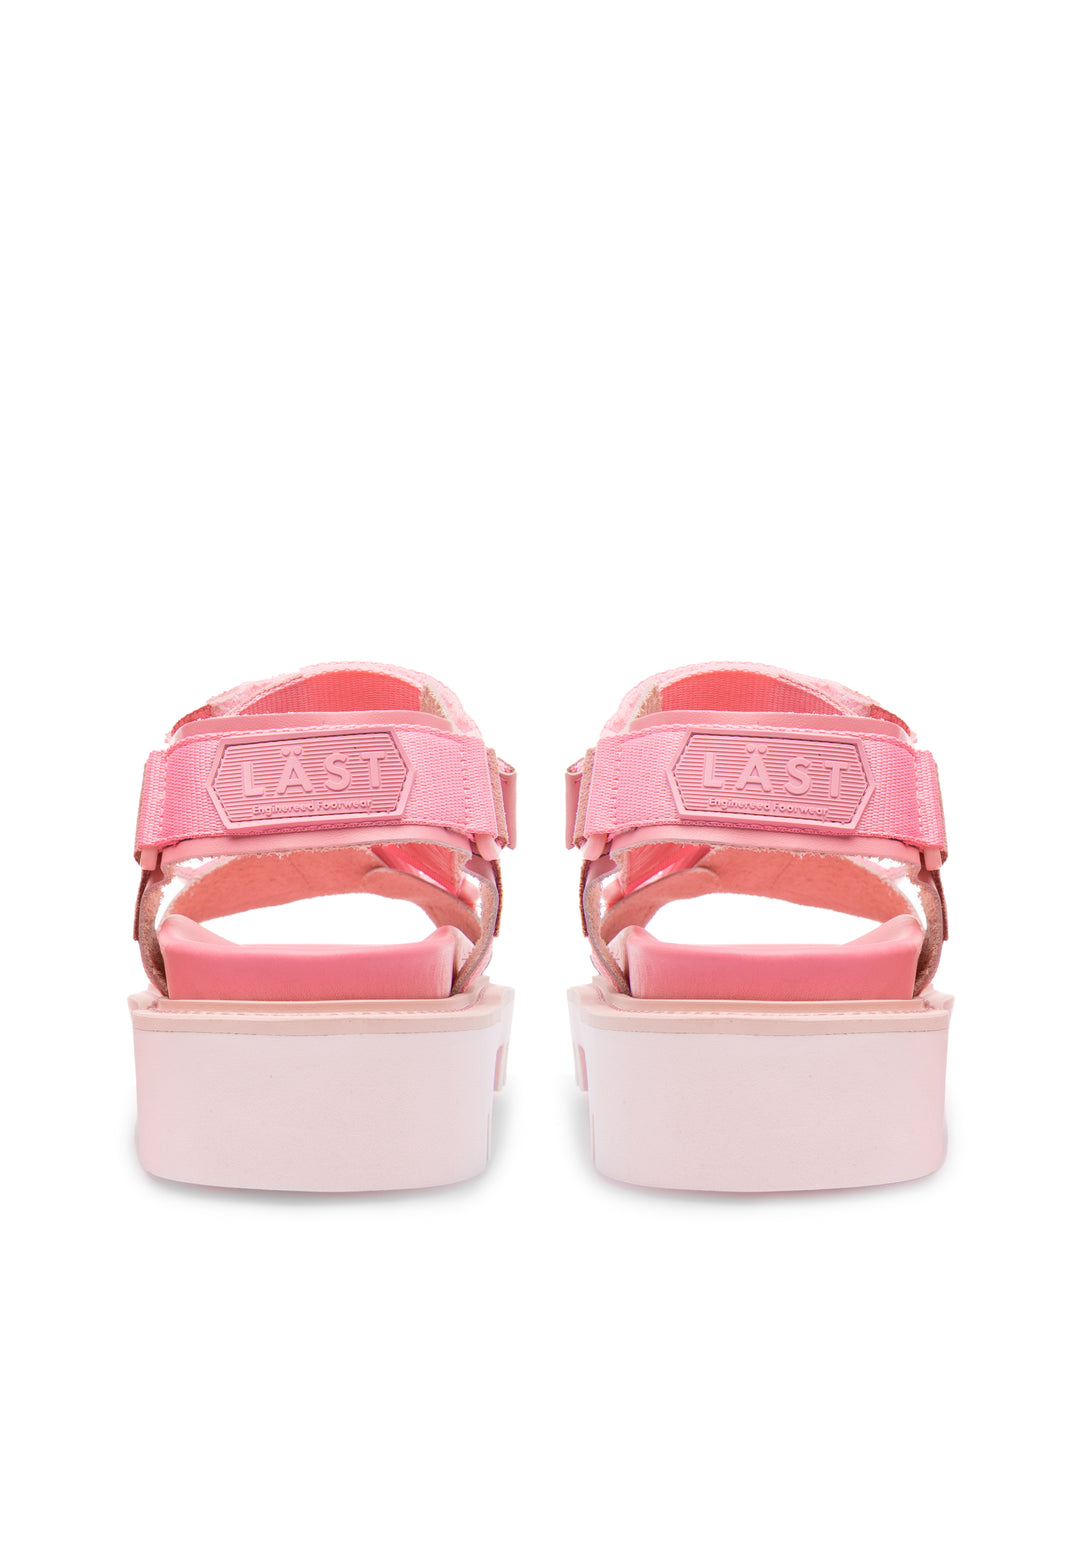 LÄST Candy - Pink Sandals Pink